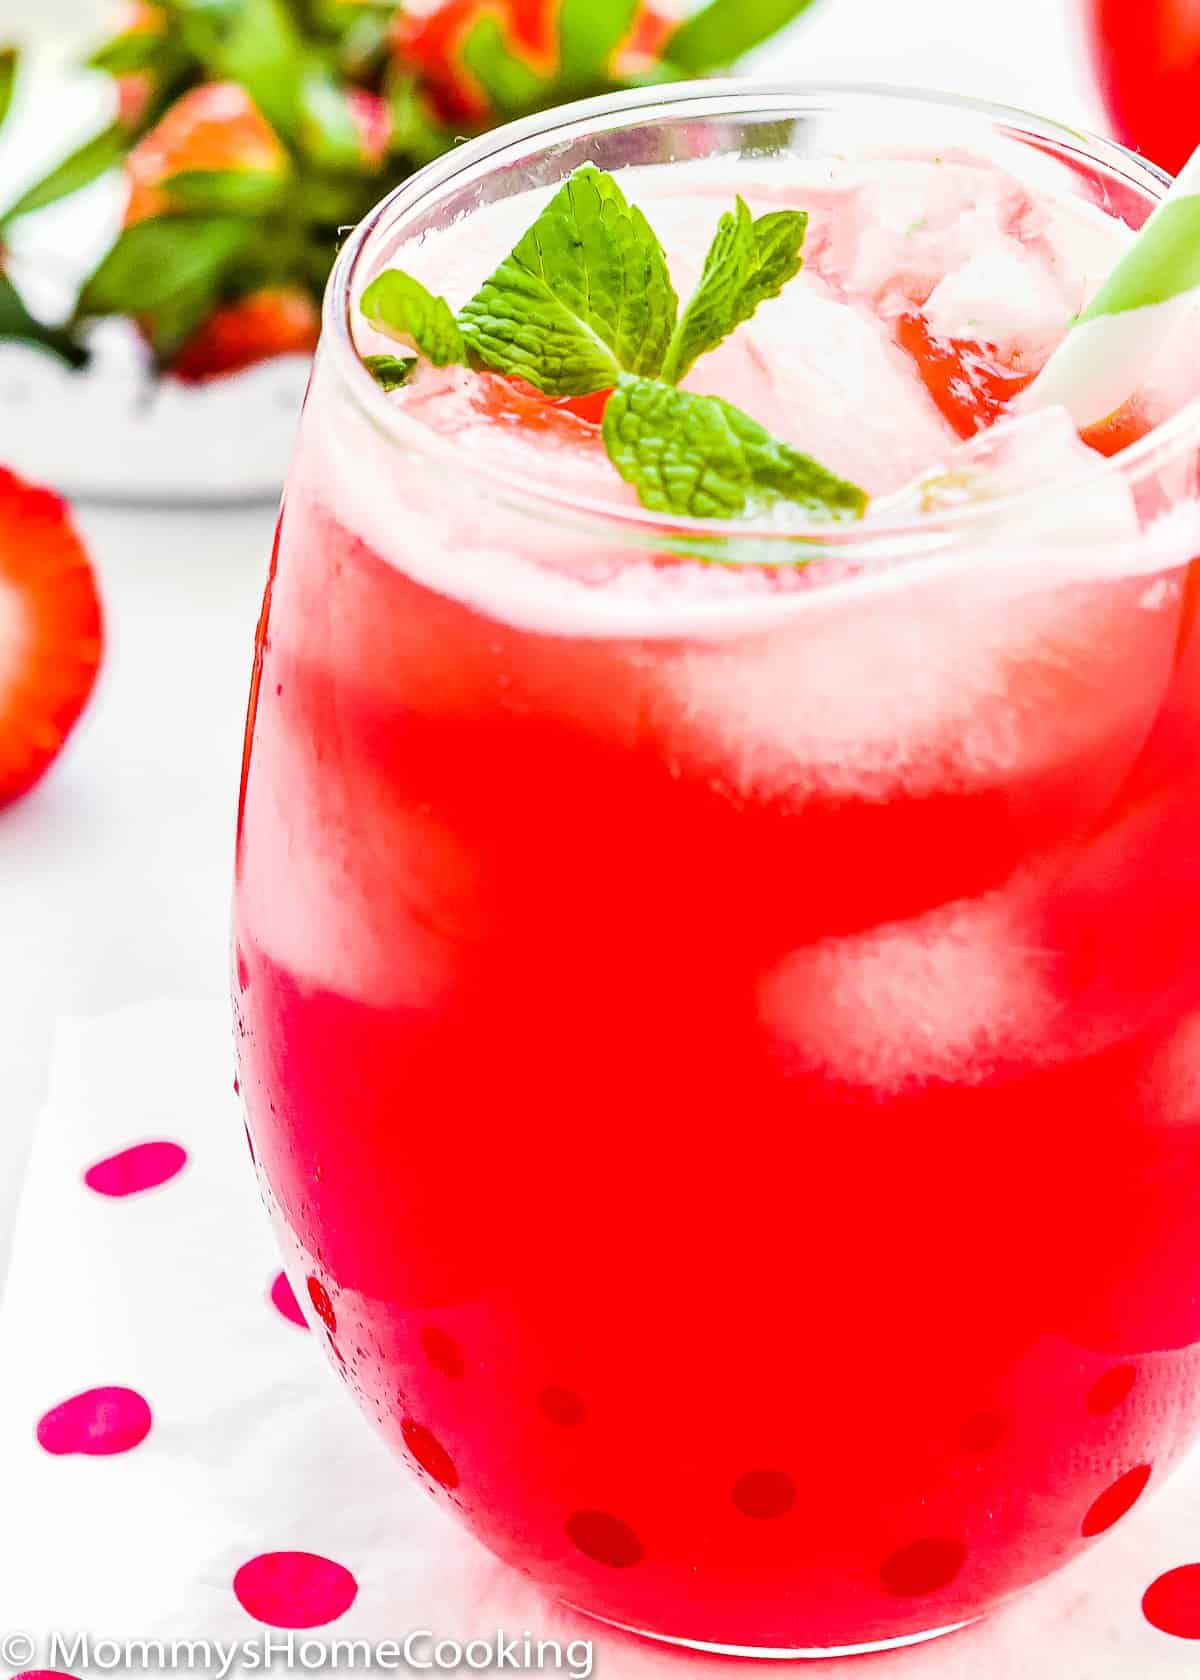 closeup view of a glass full of homemade Strawberry lemonade